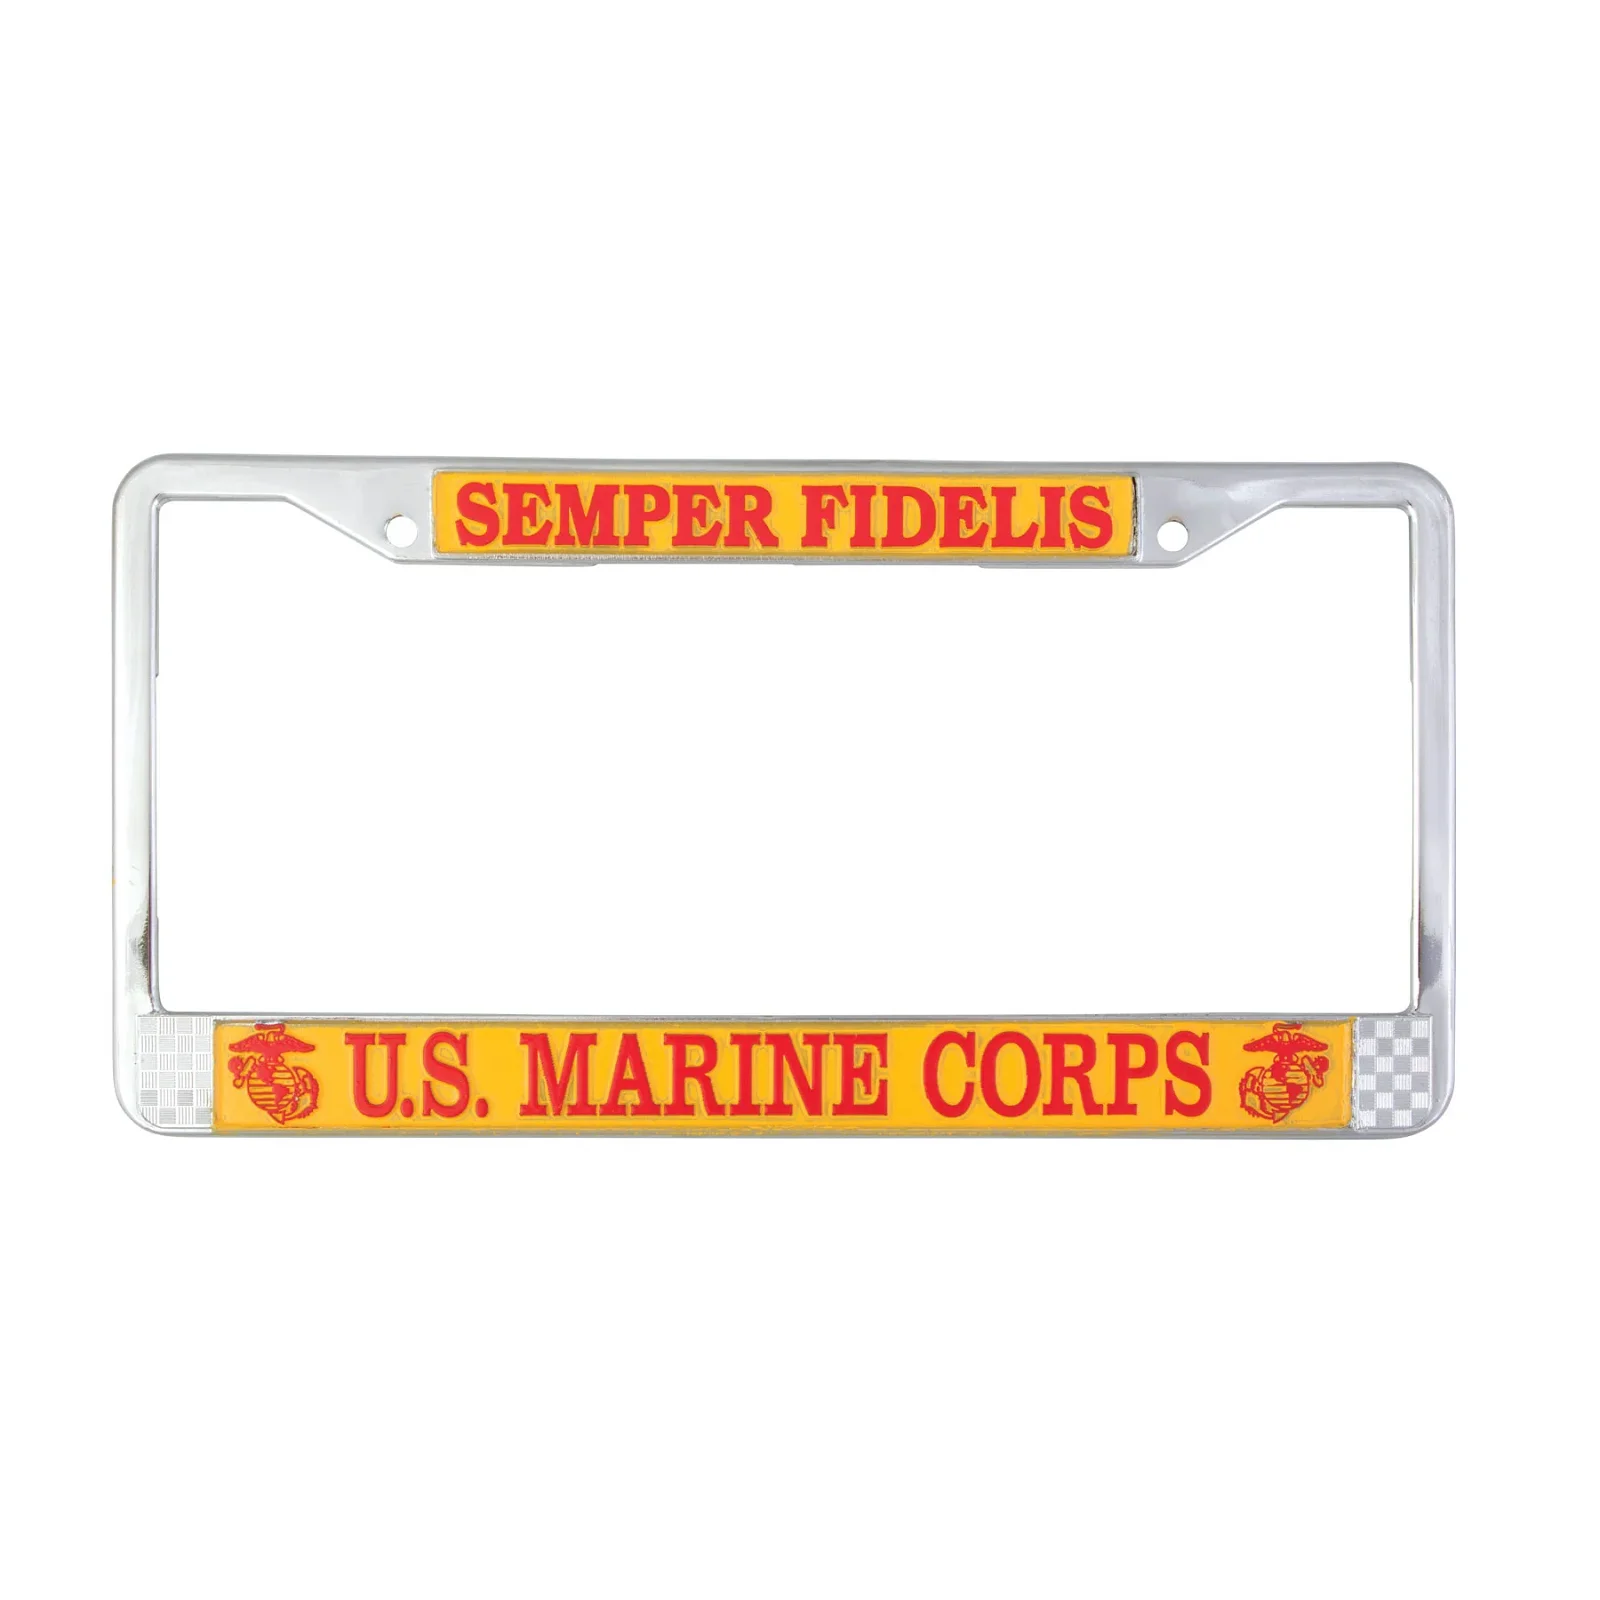 Image of Semper Fidelis License Plate Frame